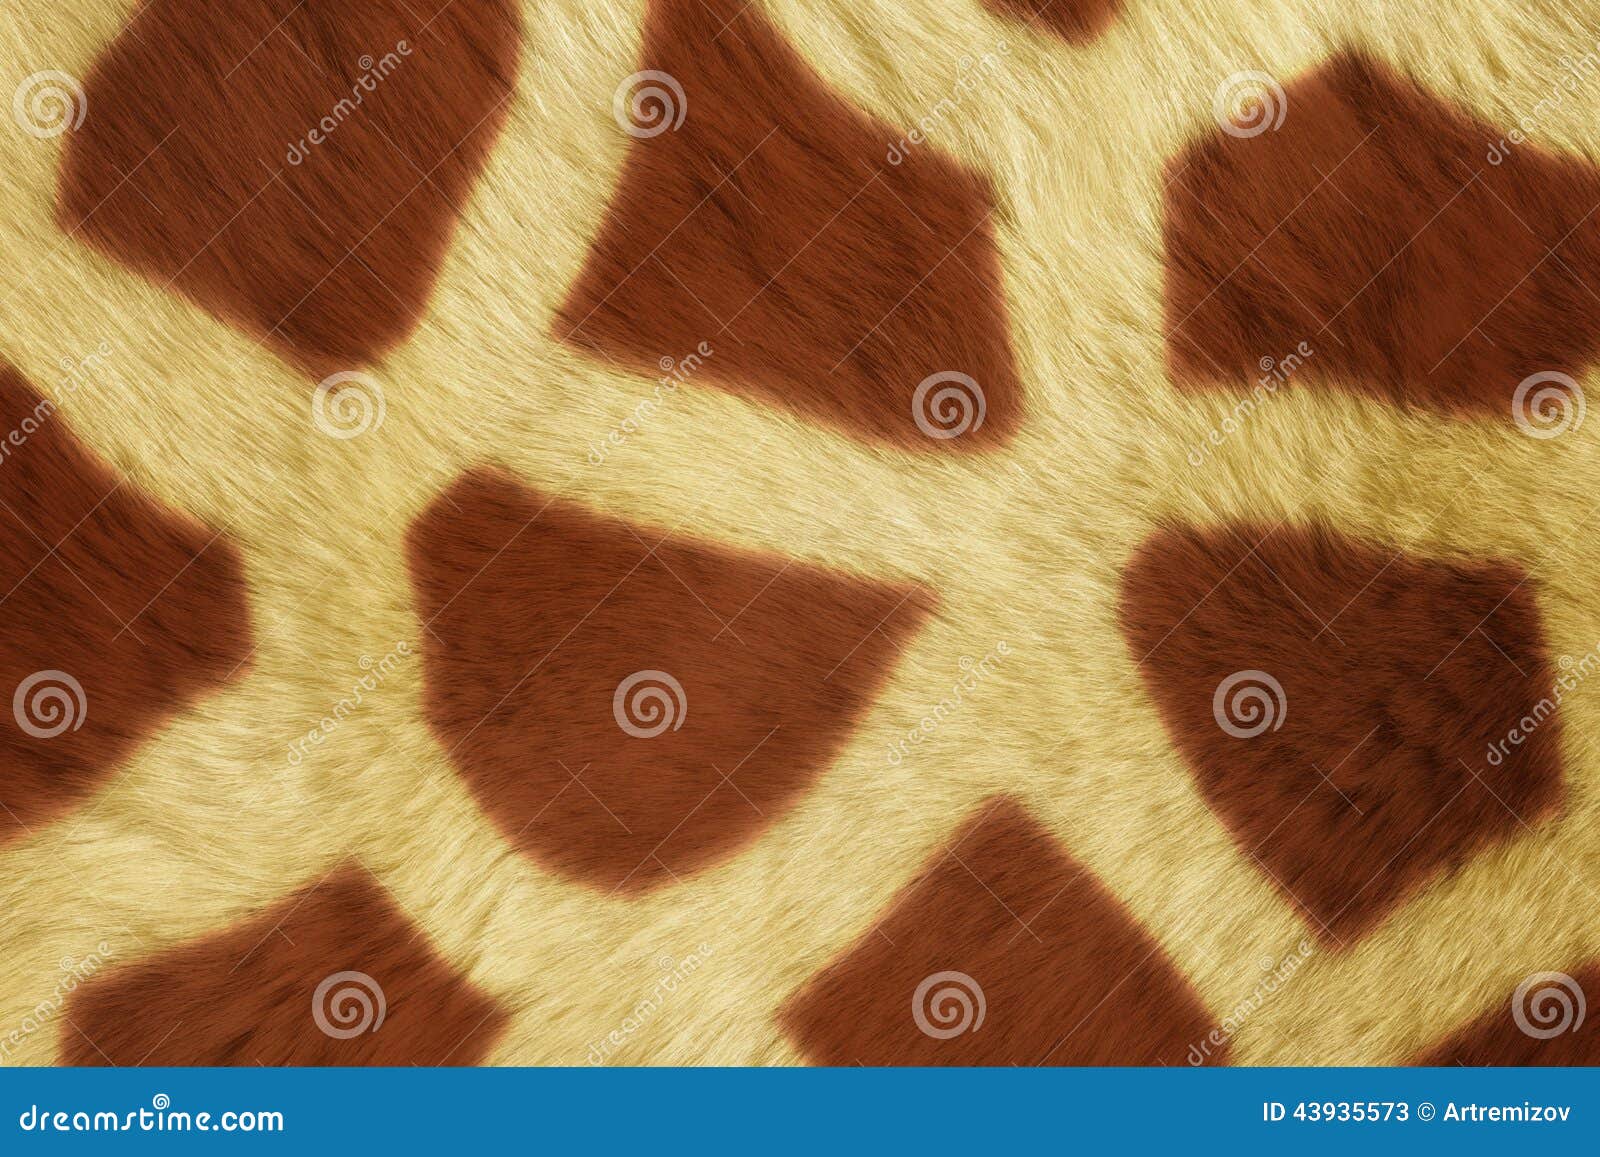 Texturas do animal de pele, Girafe grande. Uma série de texturas do animal de pele